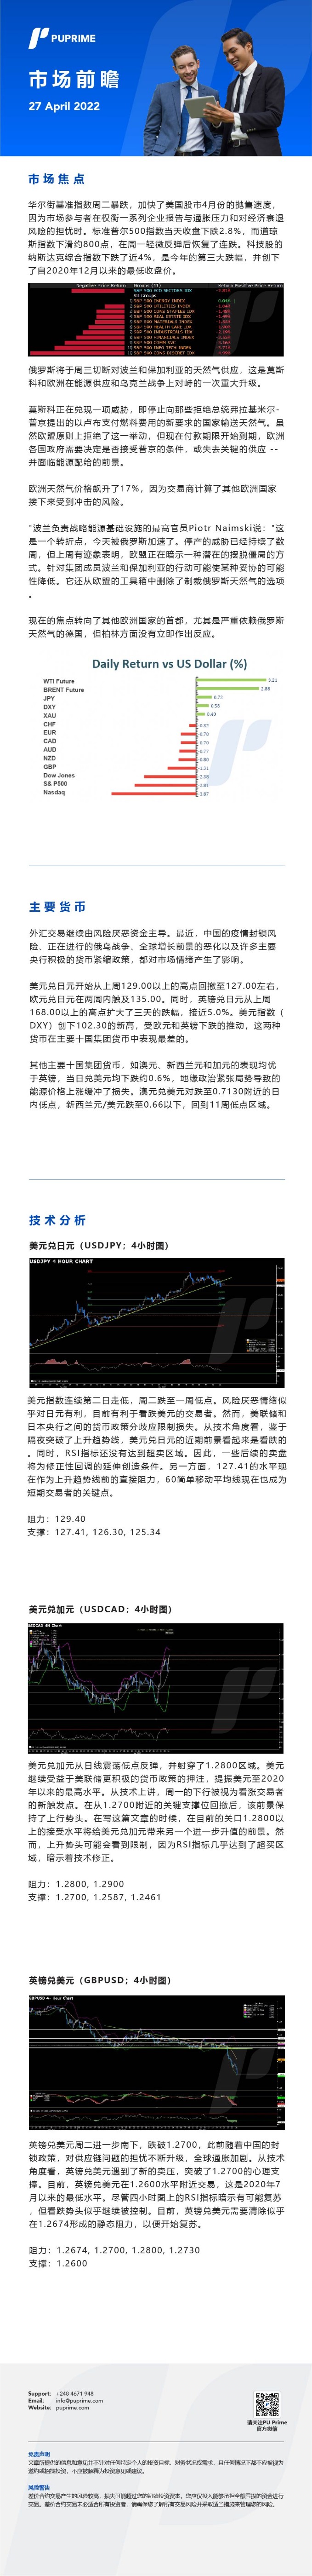 27042022 Daily Market Analysis__CHN.jpg